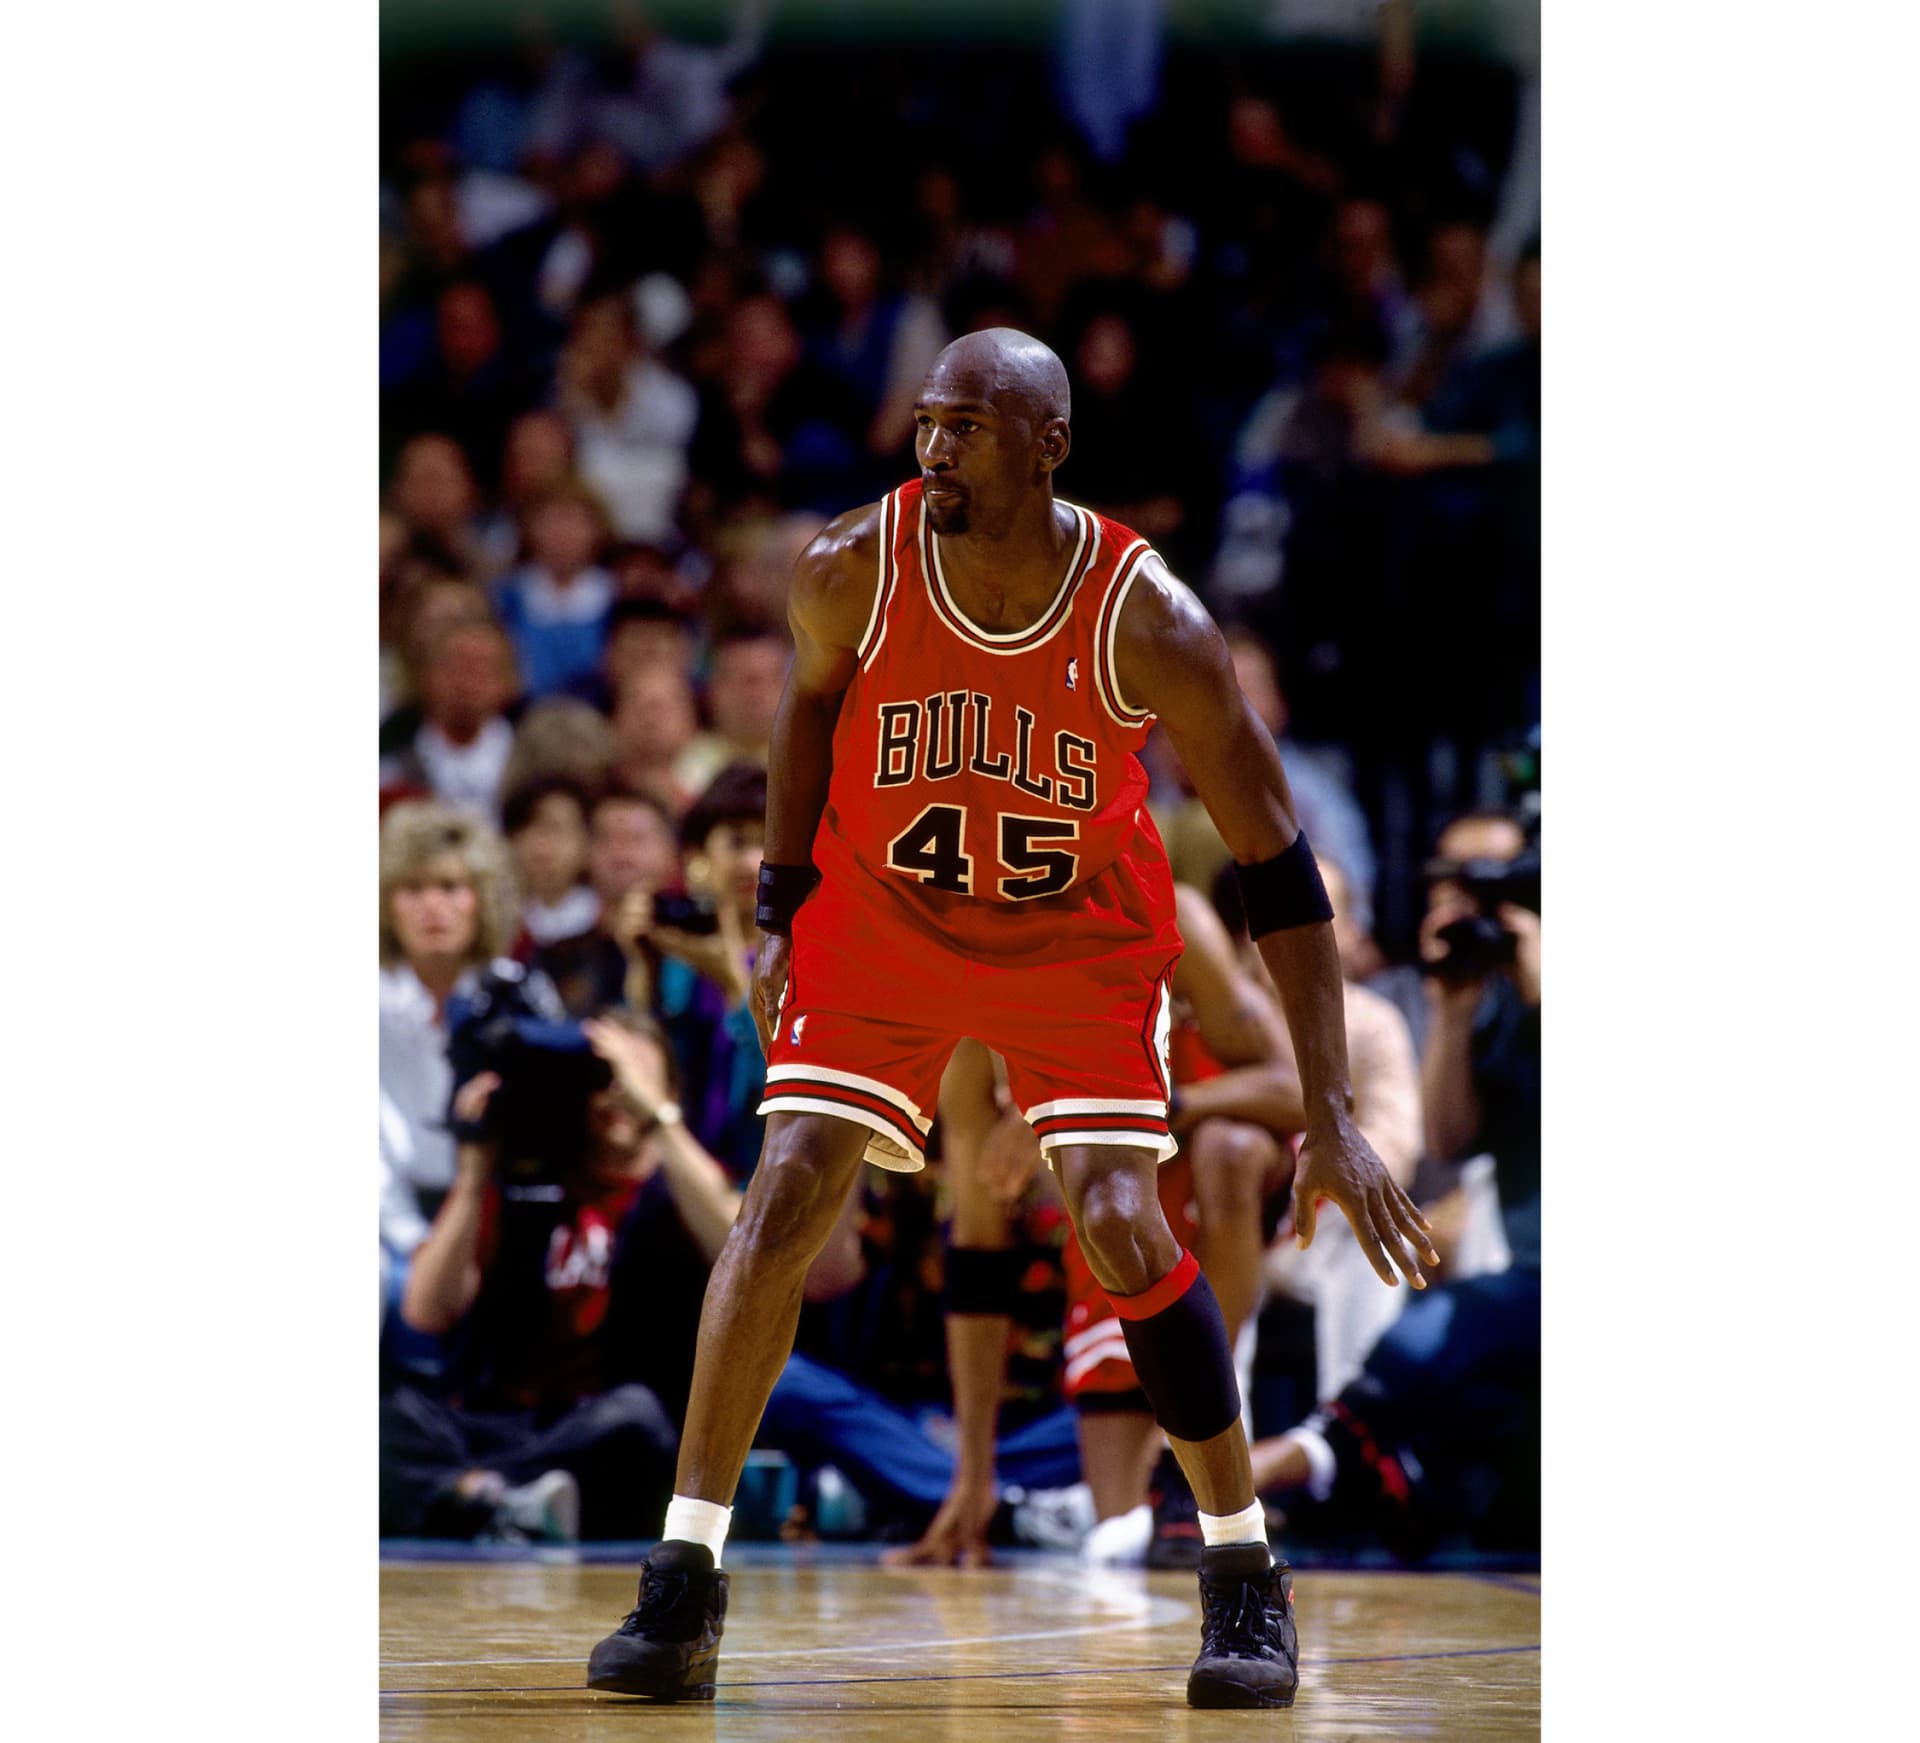 Air Jordan IX (9) Baseball Cleats - Michael Jordan 45 PE